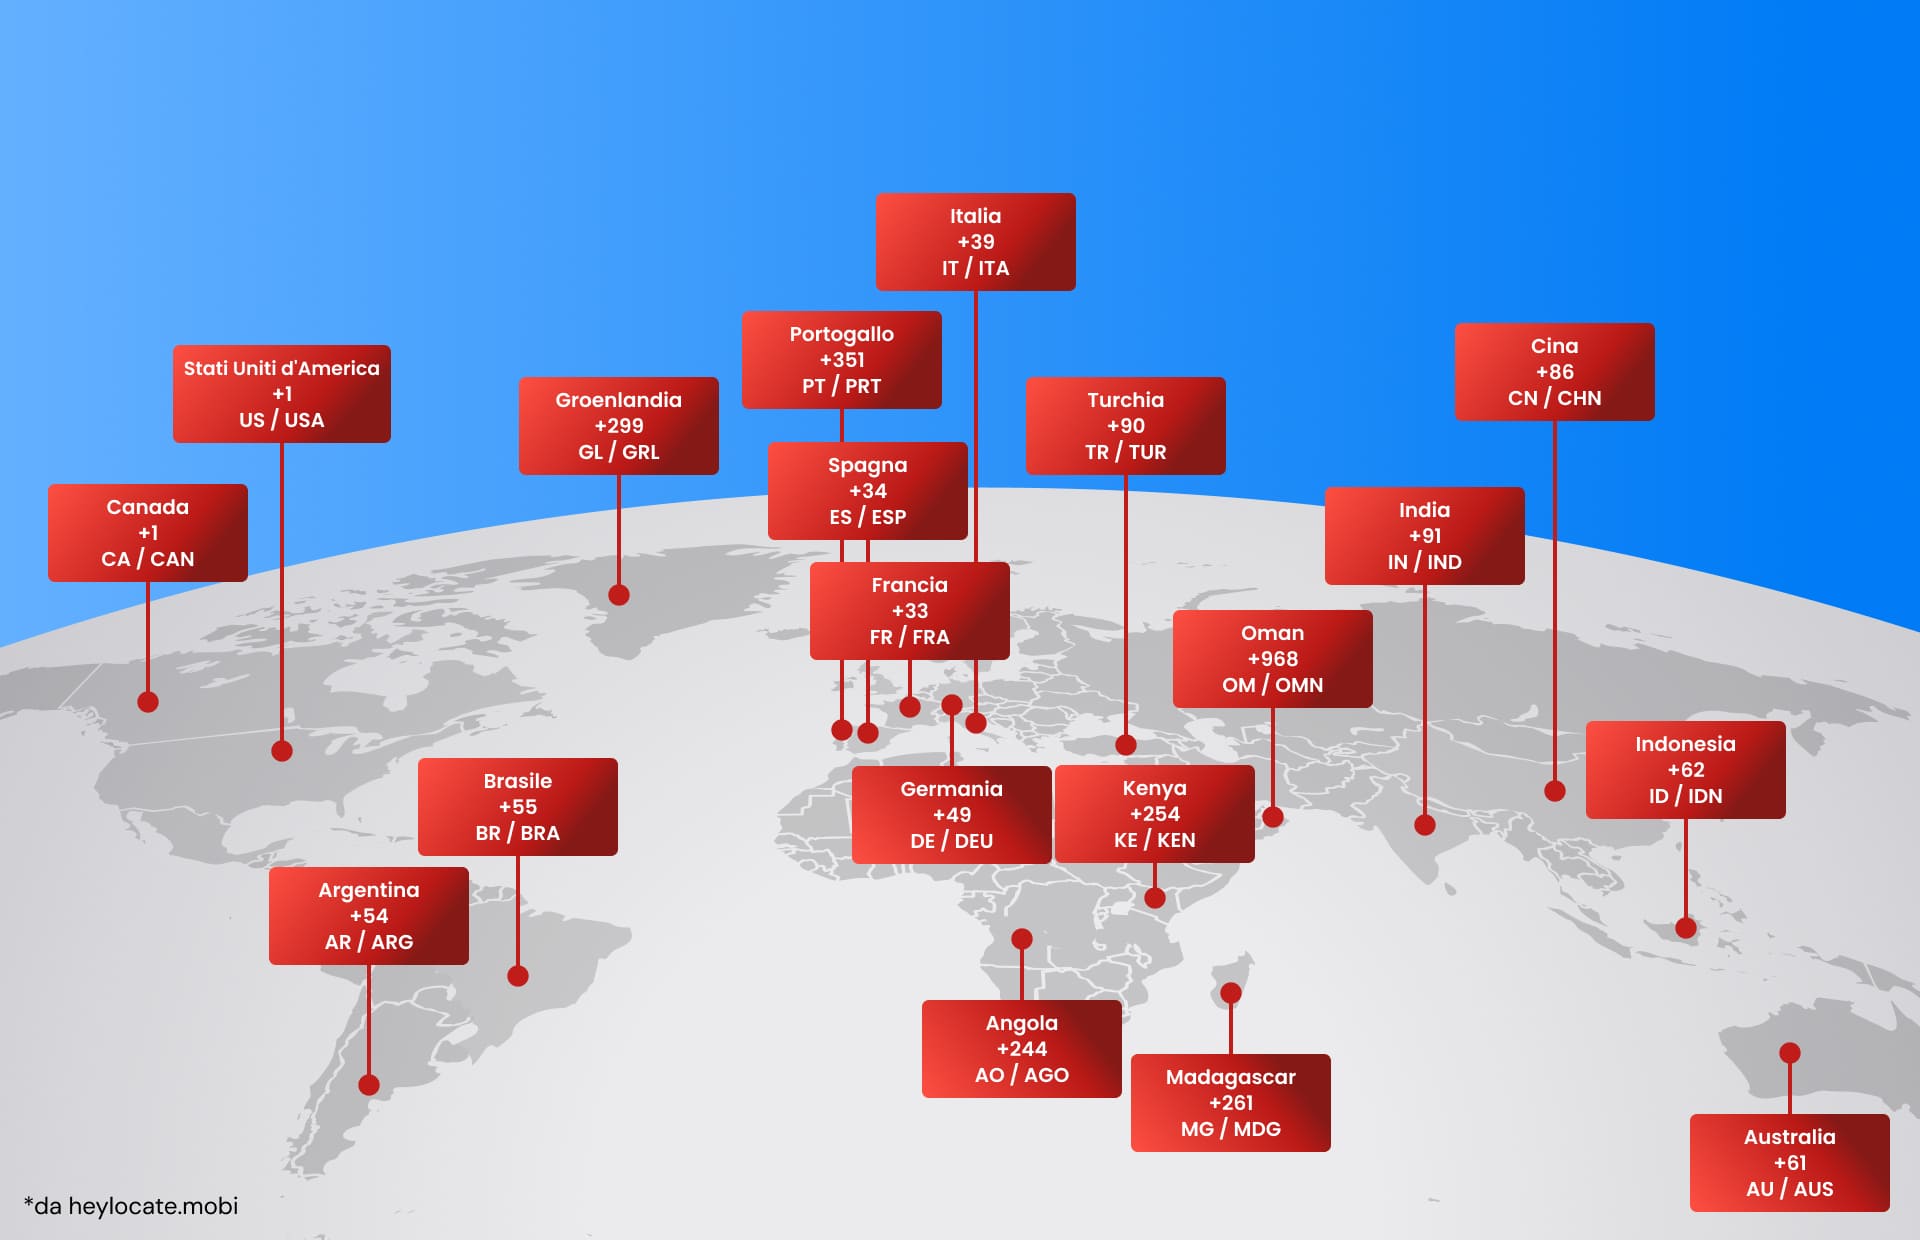 Mappa del mondo con le indicazioni dei codici nazionali di vari paesi che illustrano il sistema globale dei codici di composizione telefonica